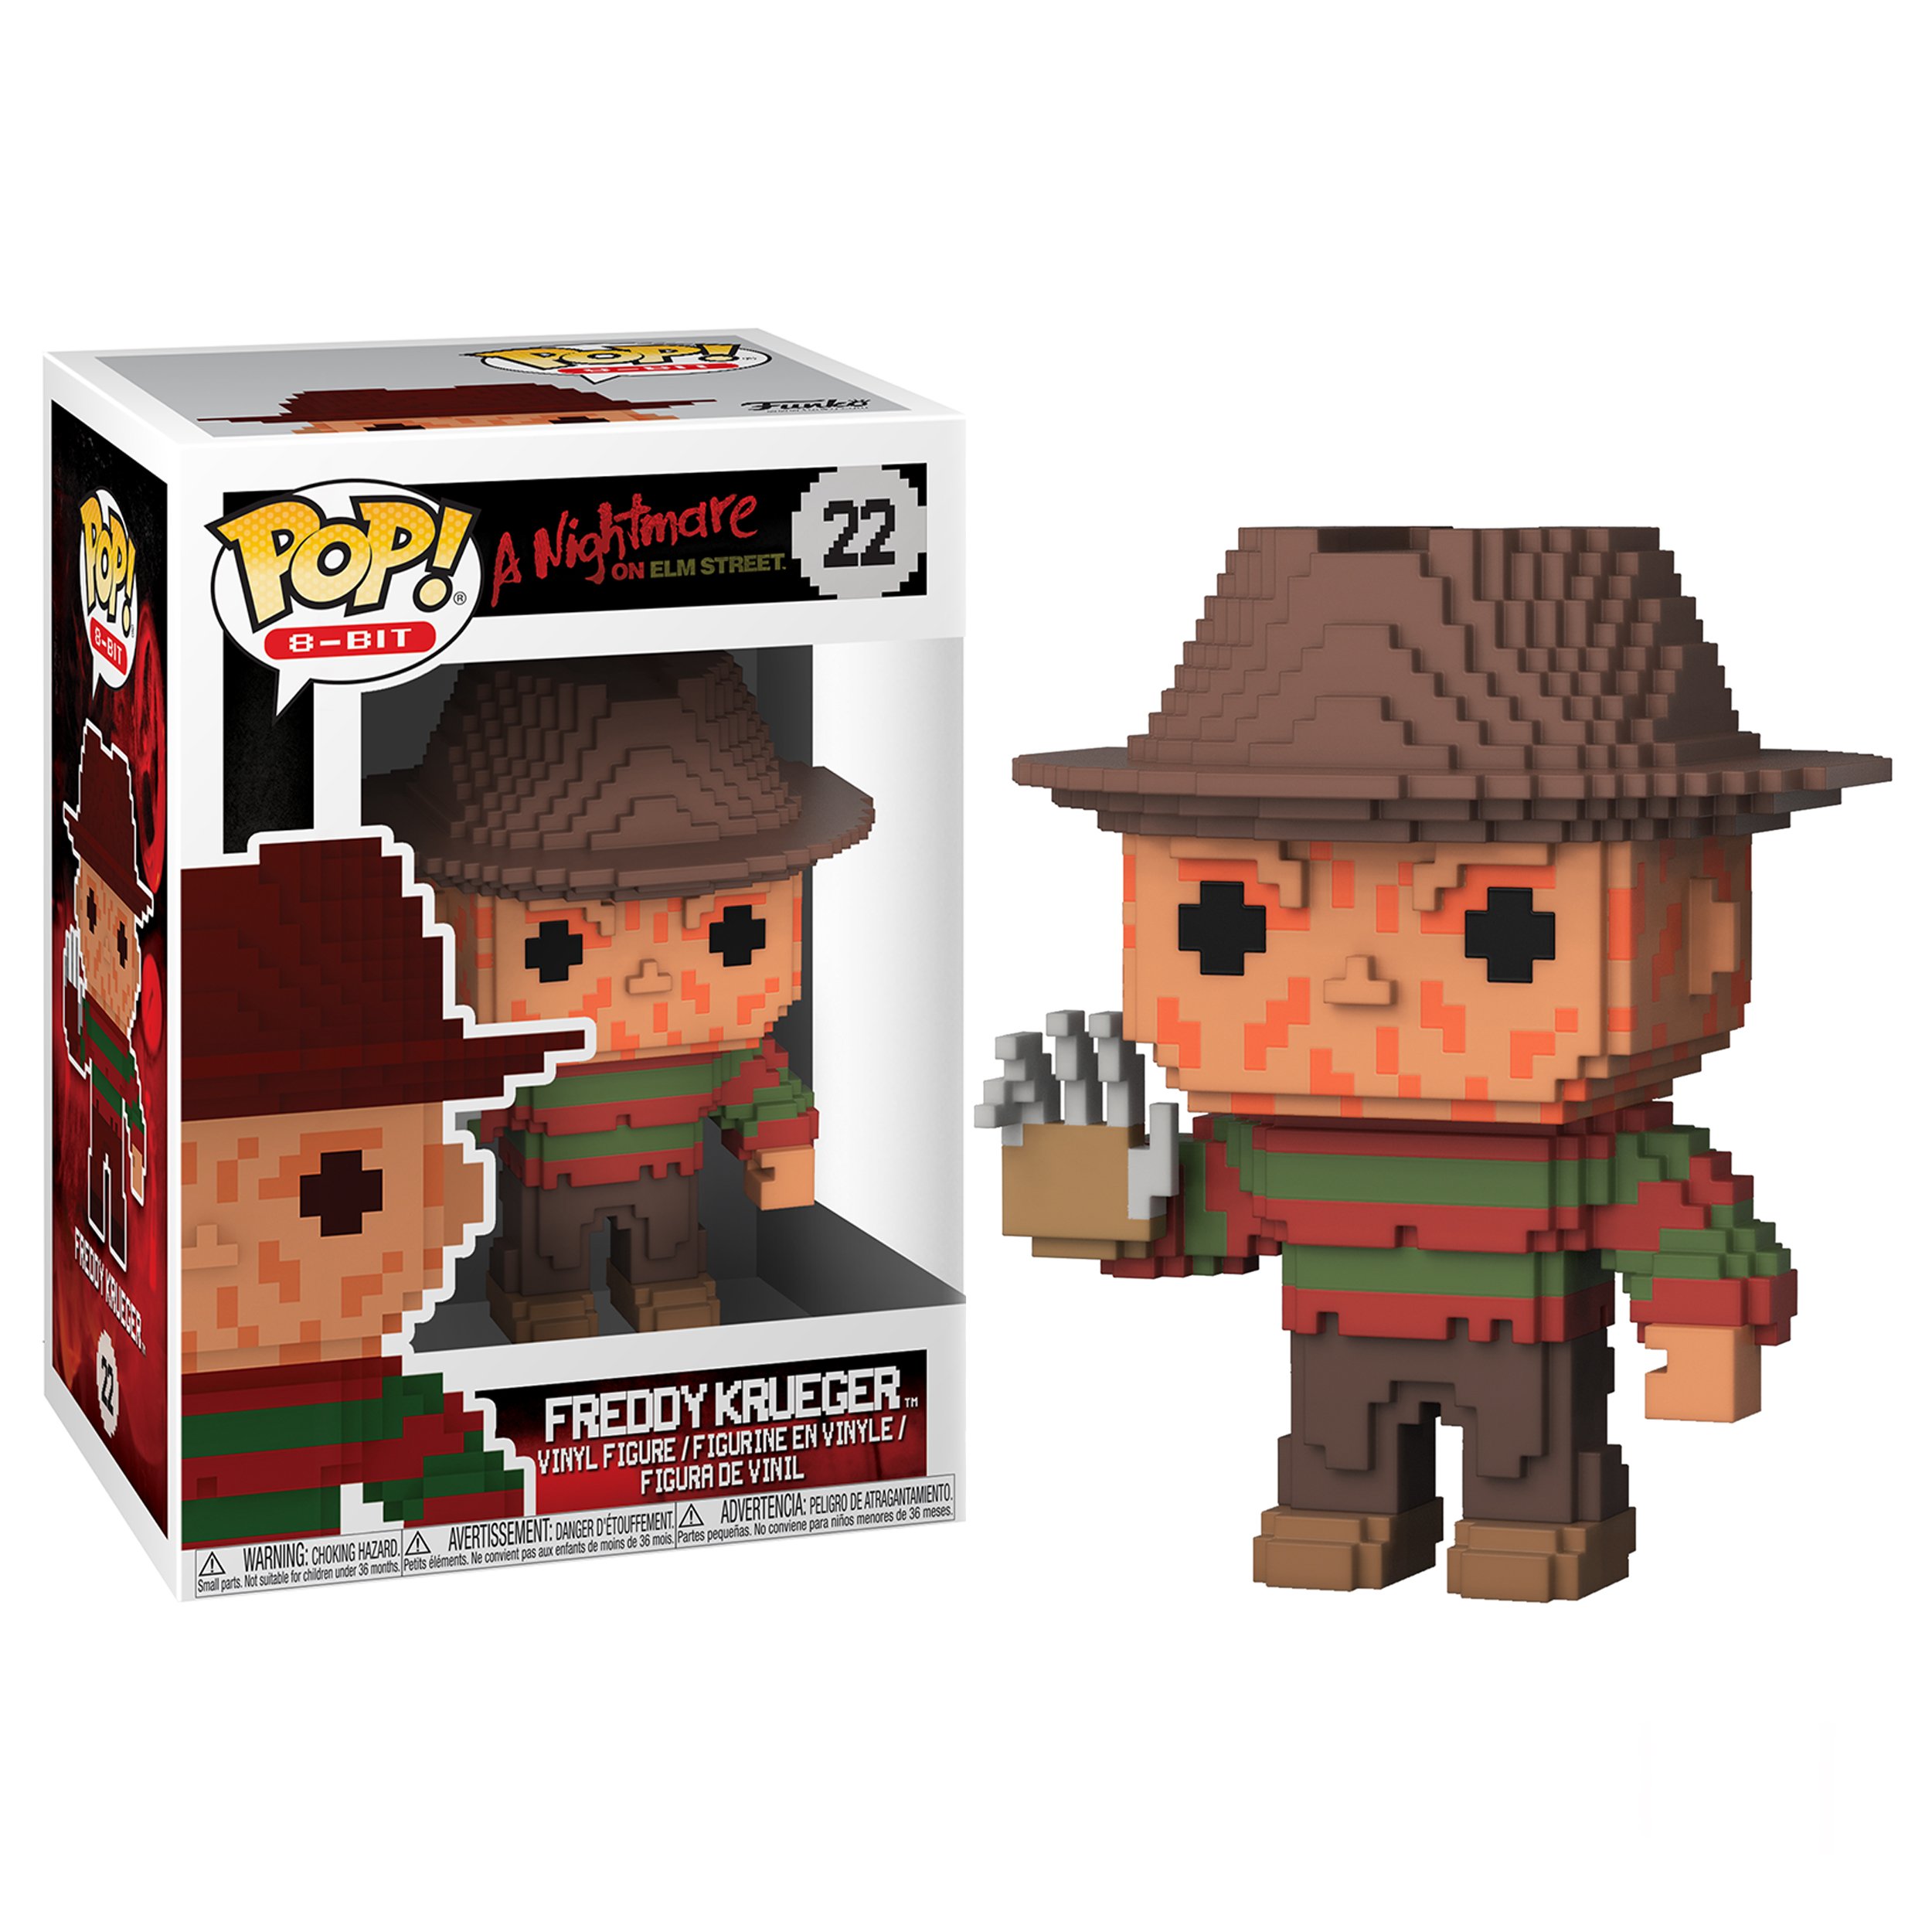 POP! 8-Bit: A Nightmare on Elm Street - Freddy Krueger 